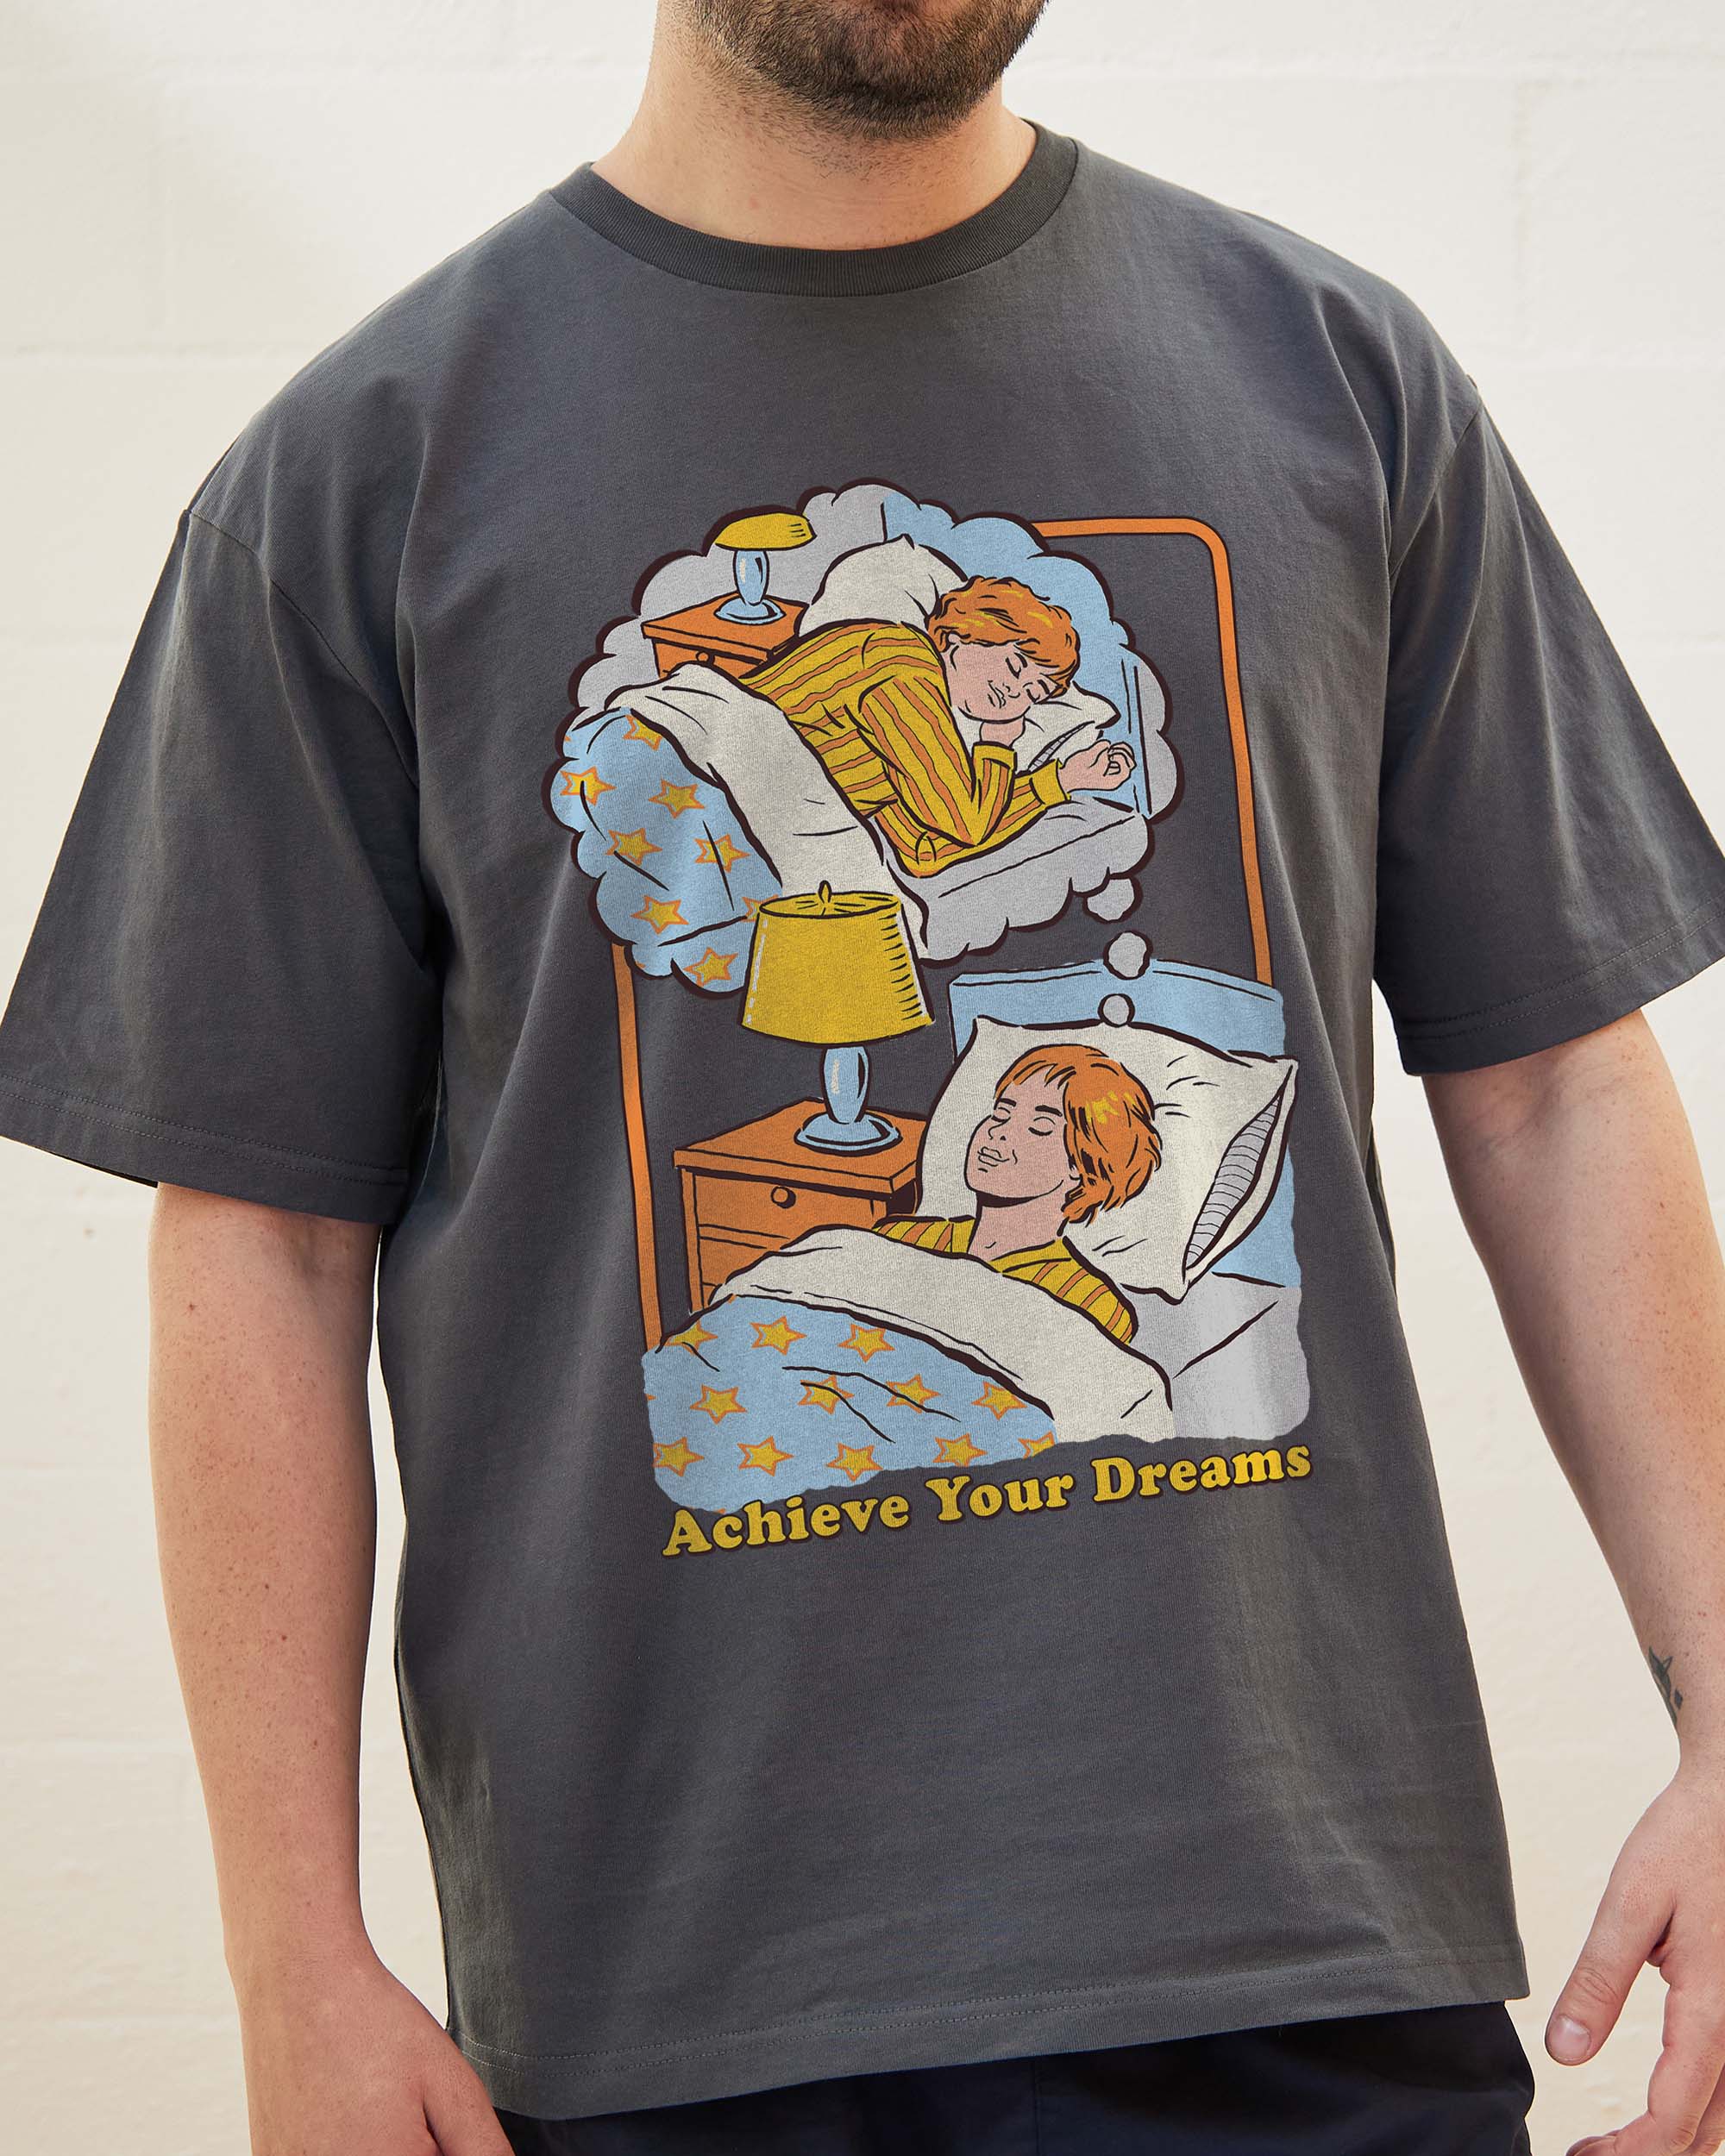 Achieve Your Dreams T-Shirt Australia Online Coal